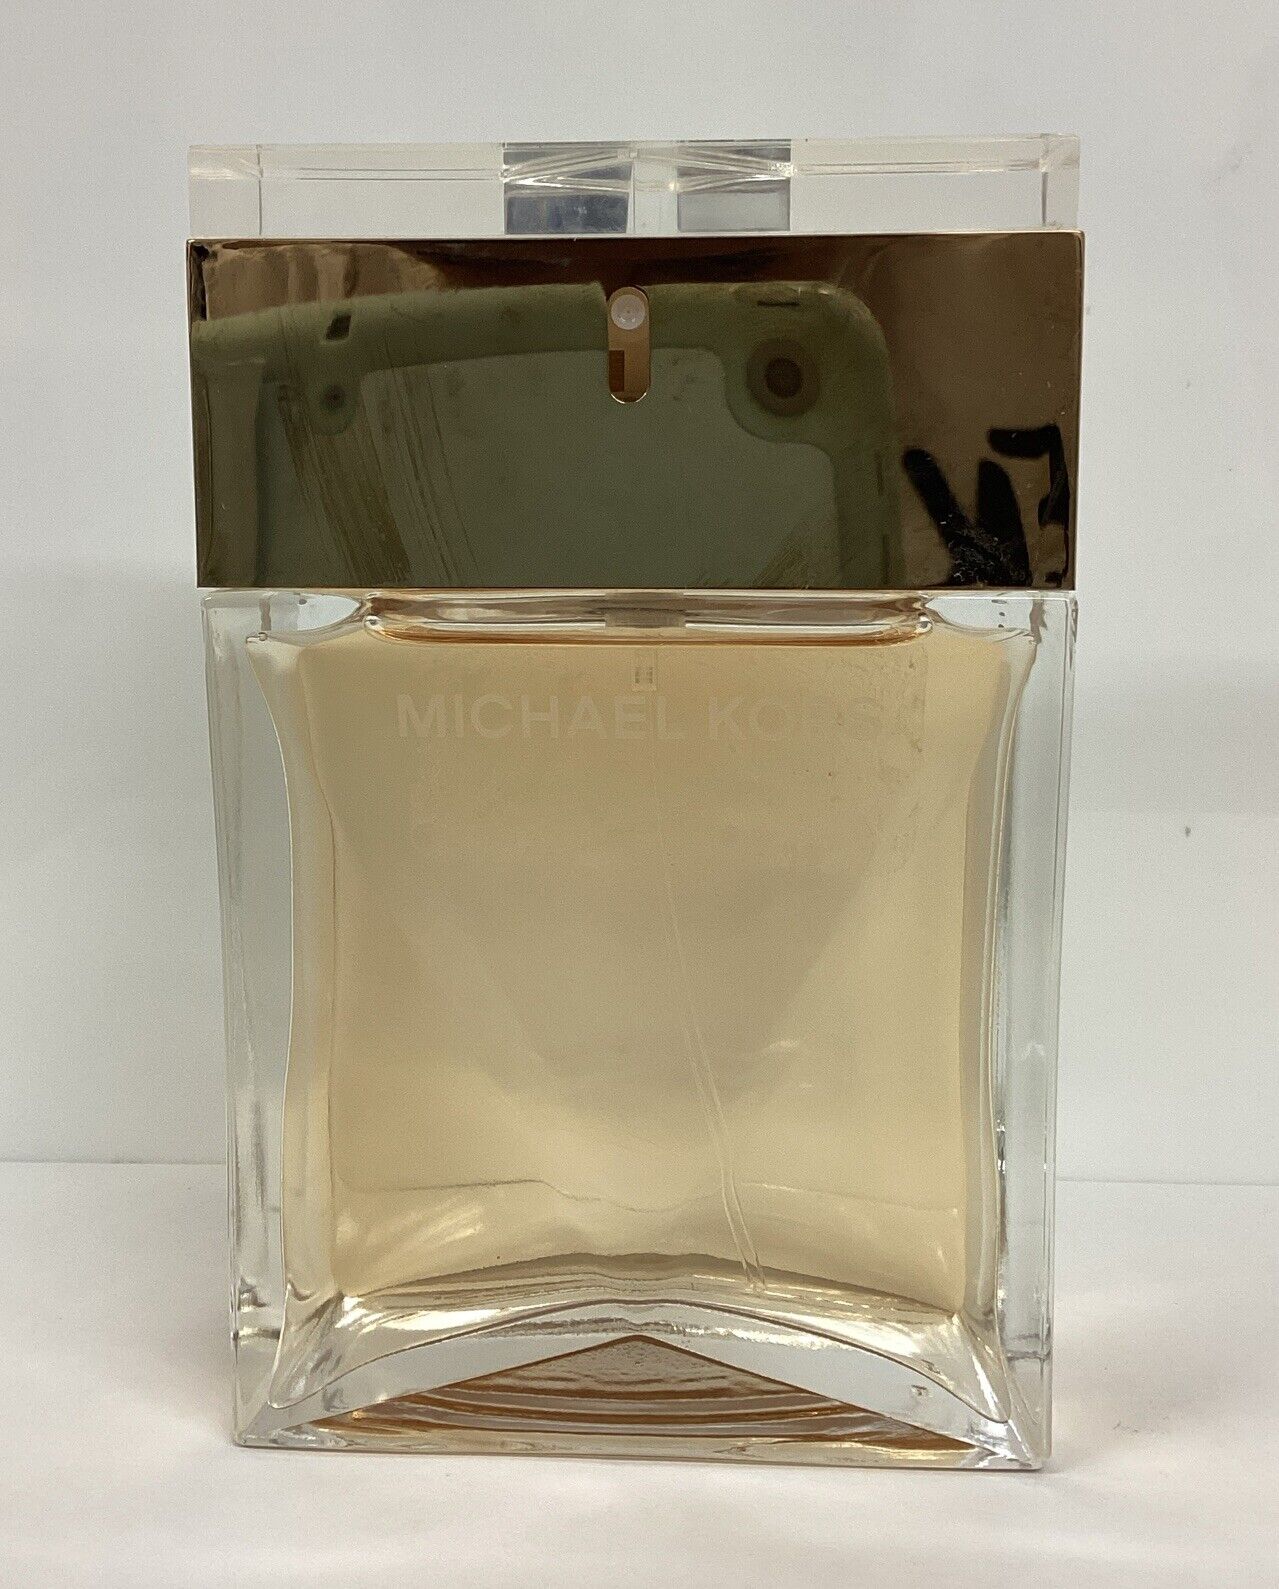 Michael Kors Gold Luxe Edition Eau De Parfum 3.4oz Spray As Pict,No Box*2016*